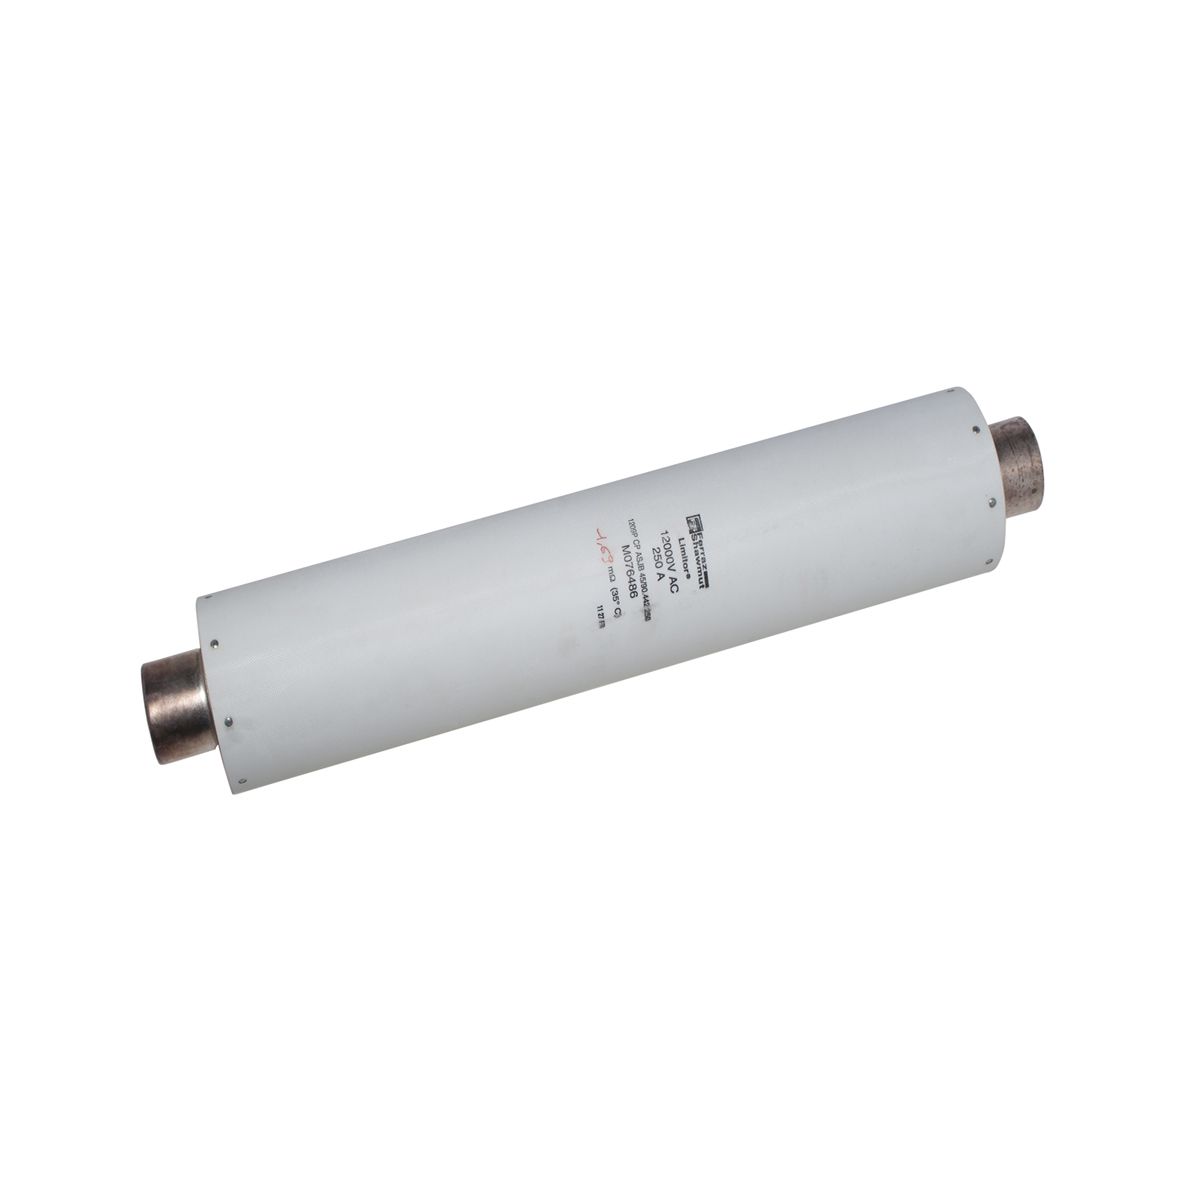 M076486 - DIN 43625 fuse for HV motor, IEC 60644, 442mm, 45mm, striker 50N, 12kV, 250A